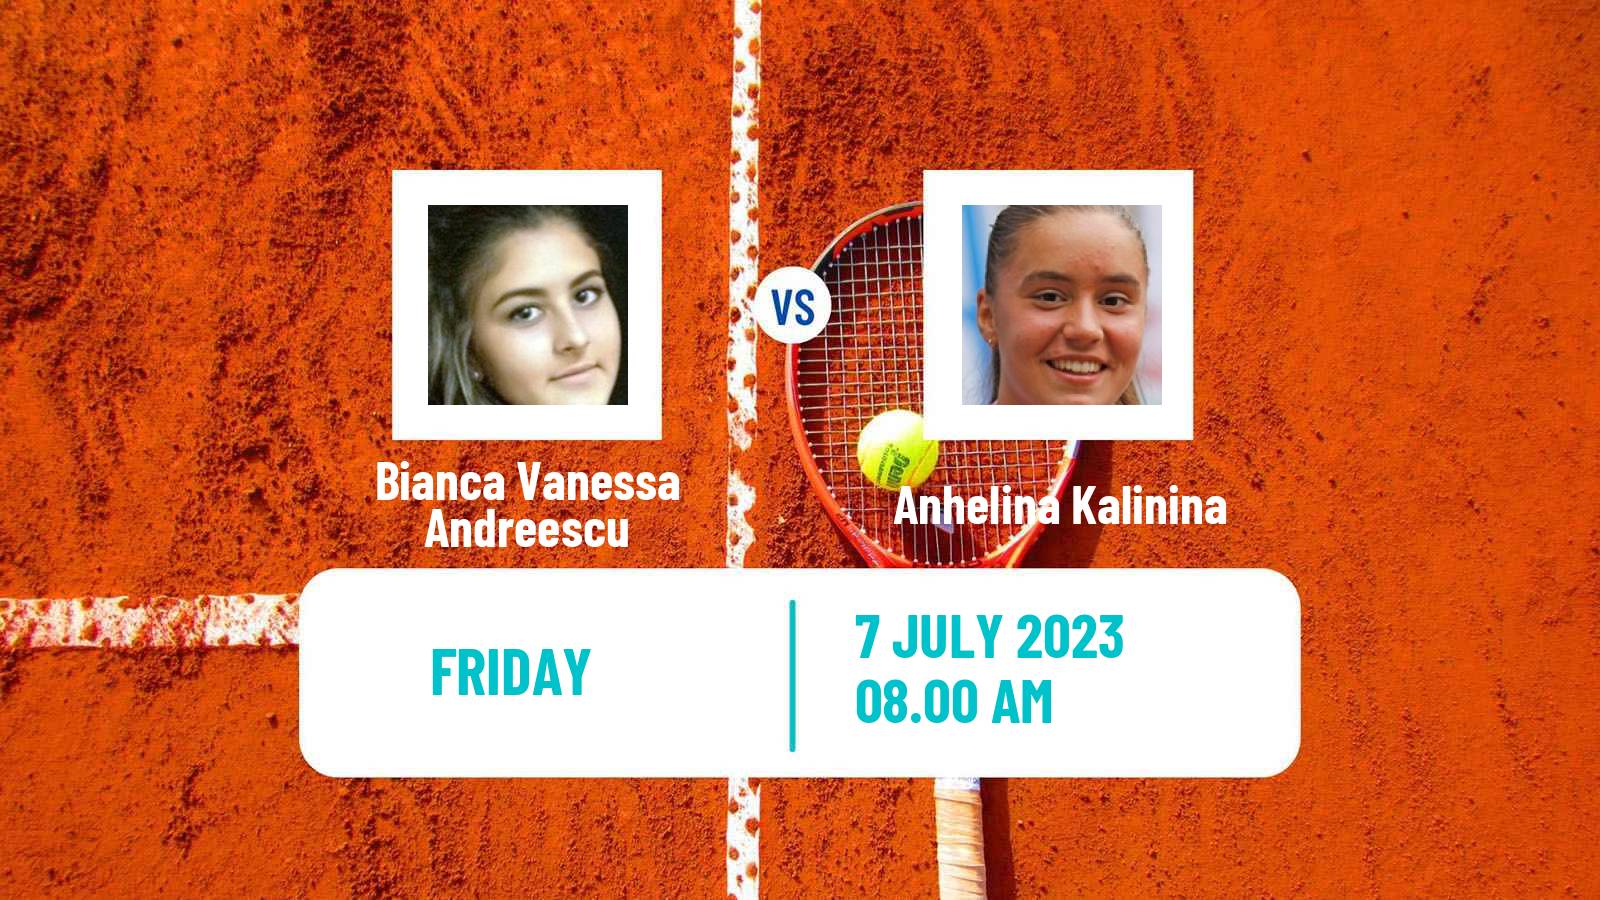 Tennis WTA Wimbledon Bianca Vanessa Andreescu - Anhelina Kalinina